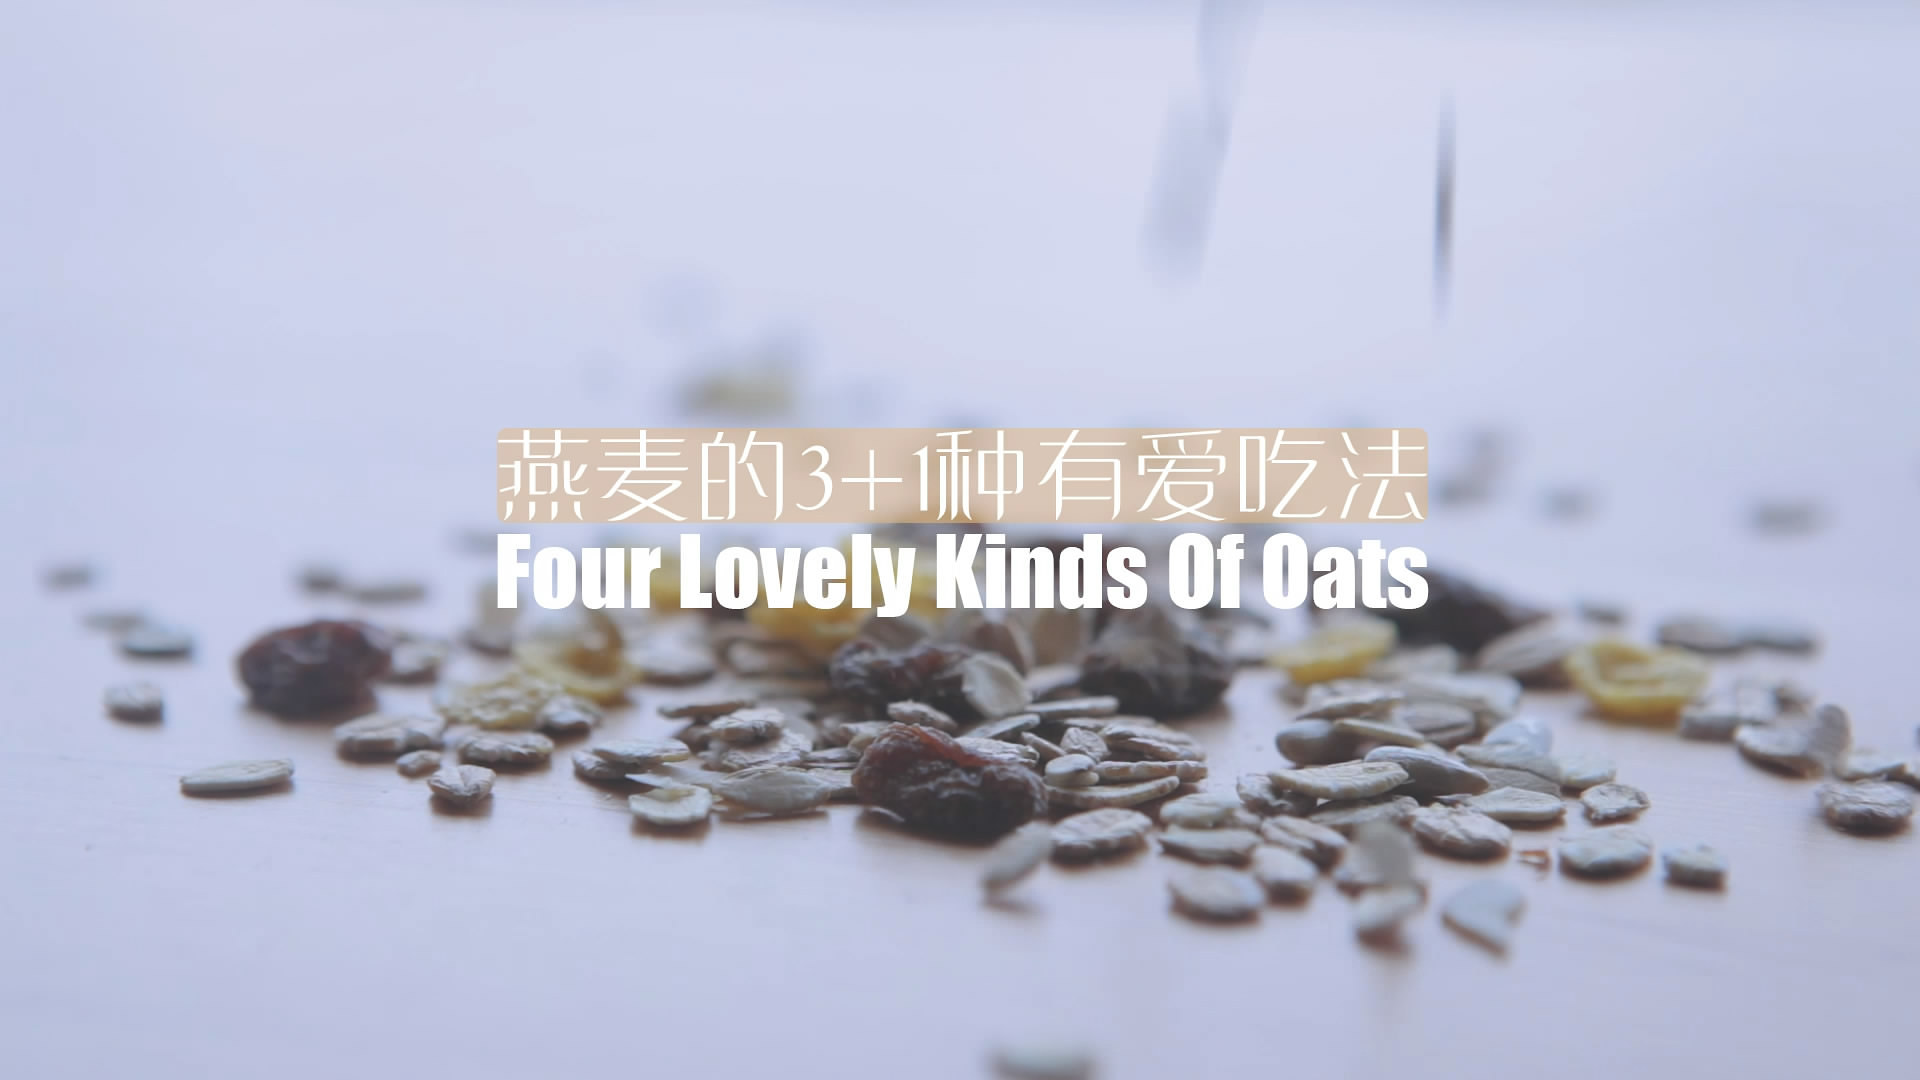 燕麦的3+1种有爱吃法「厨娘物语」的做法